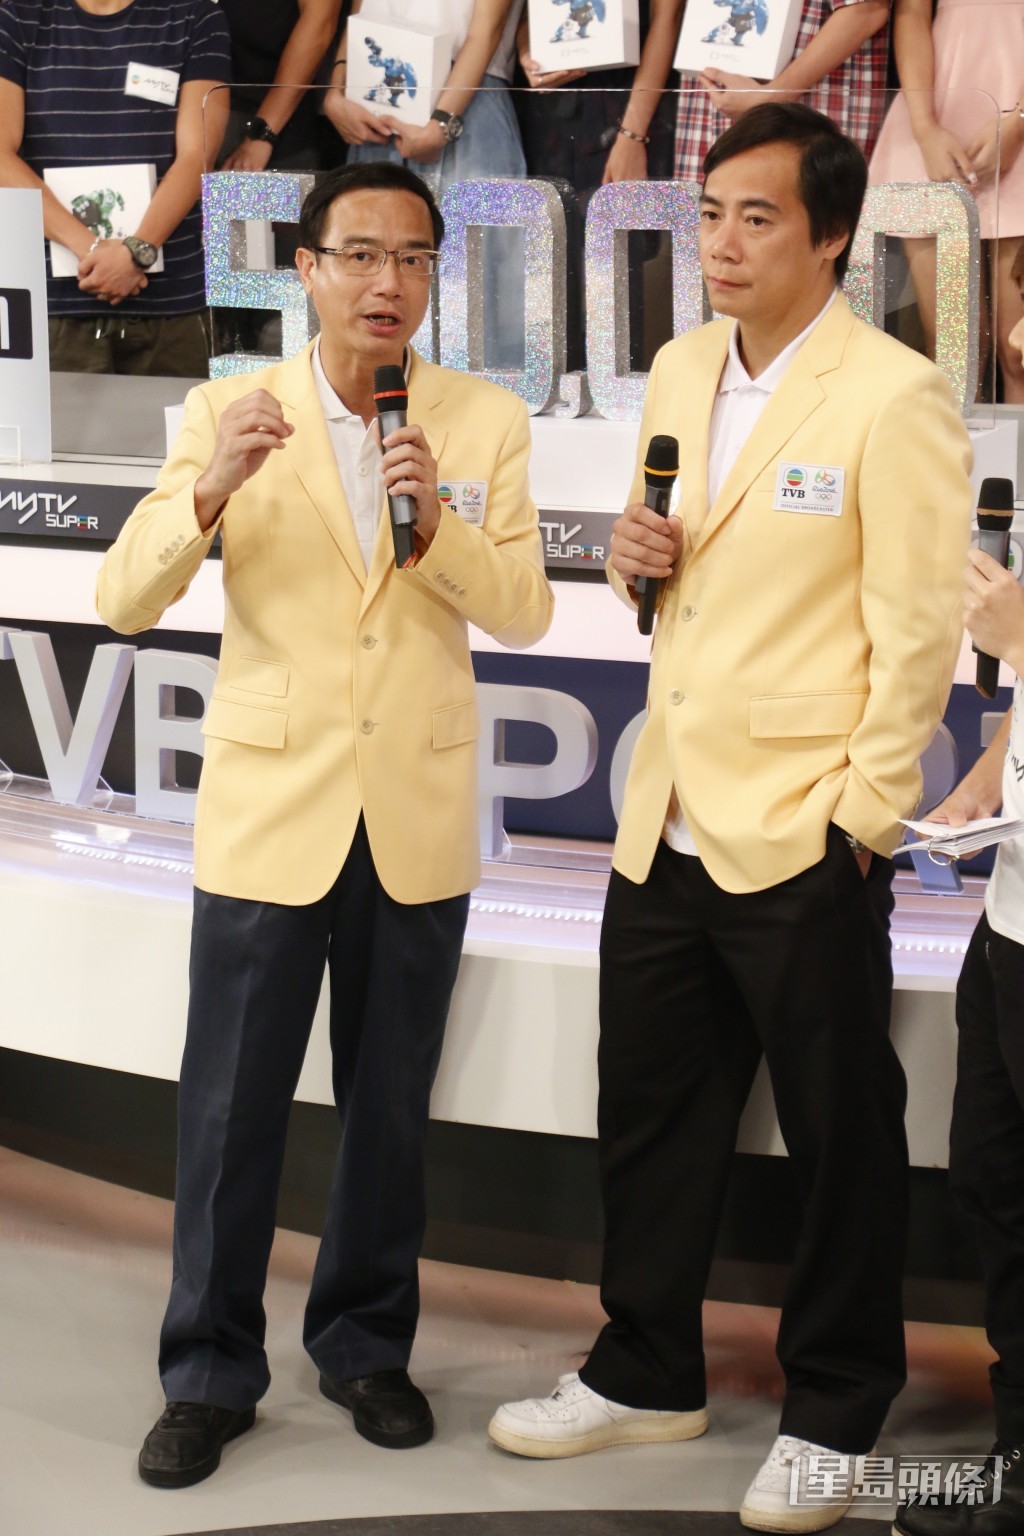 每逢TVB的體育活動都會見到鍾志光的身影。